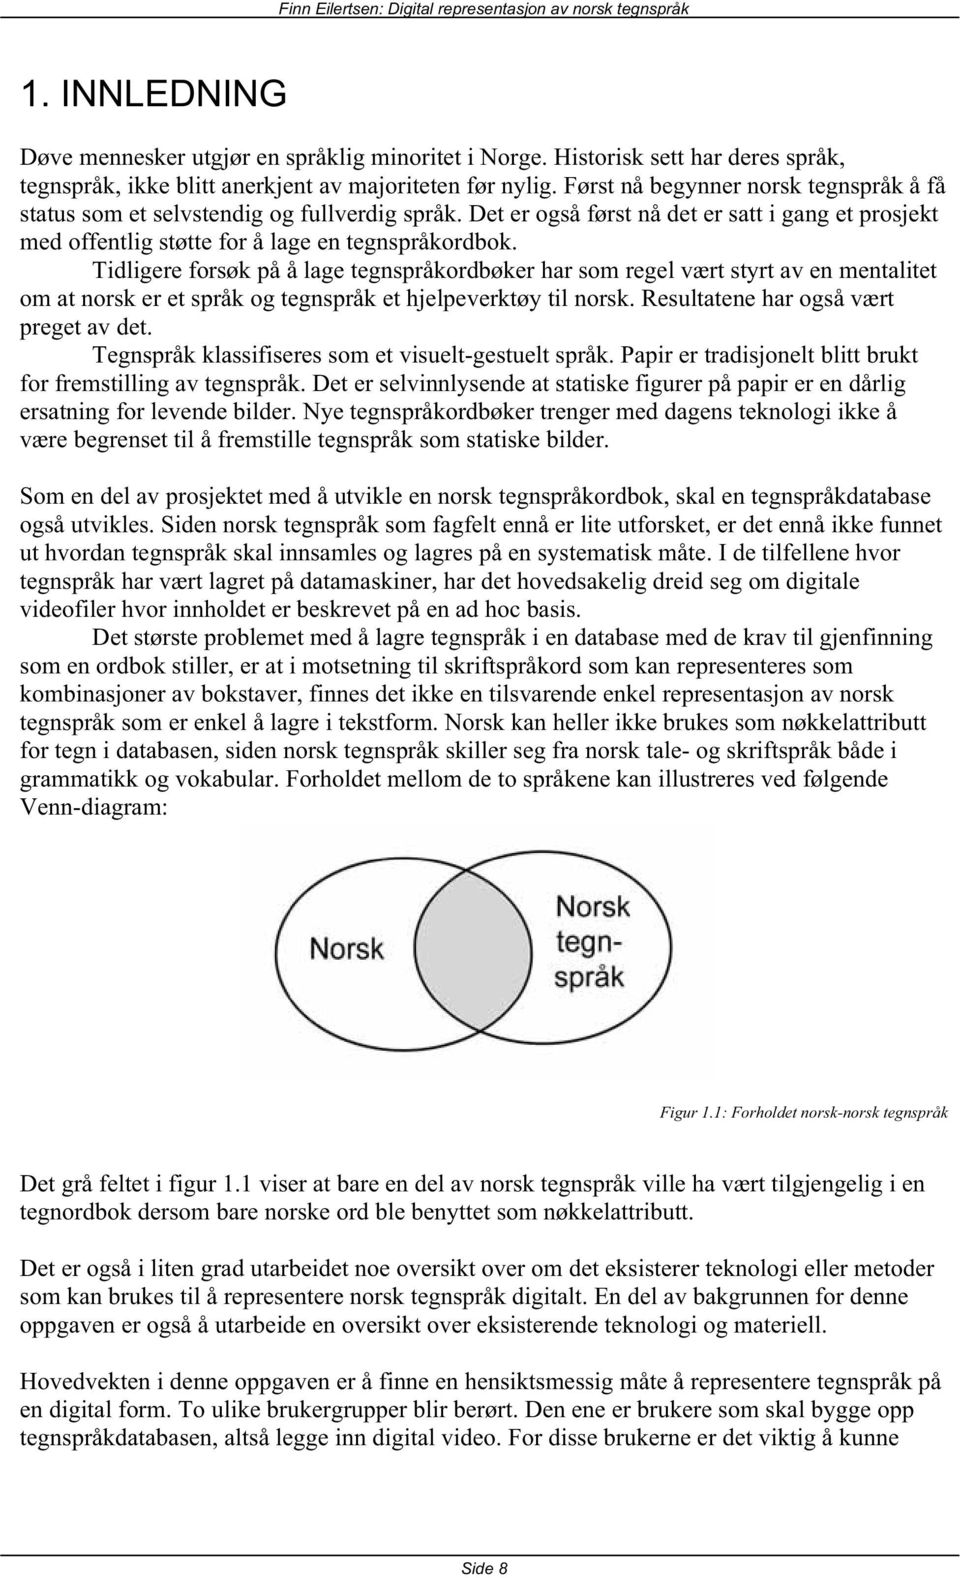 Tidligere forsøk på å lage tegnspråkordbøker har som regel vært styrt av en mentalitet om at norsk er et språk og tegnspråk et hjelpeverktøy til norsk. Resultatene har også vært preget av det.